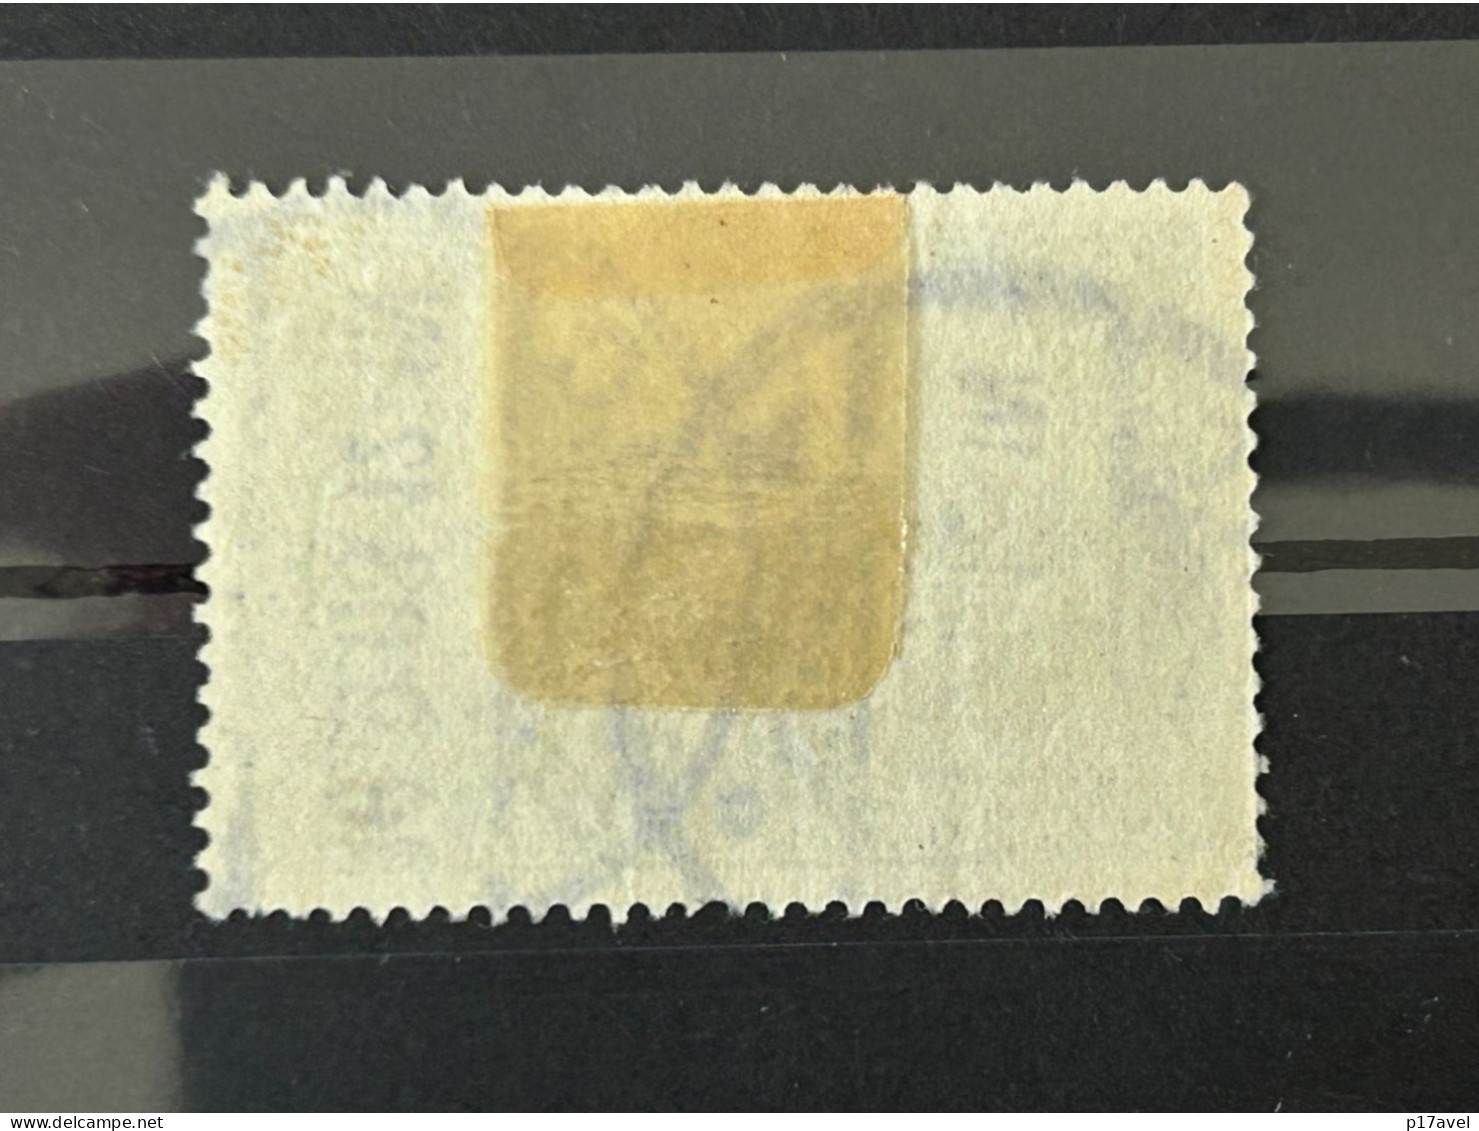 DR Freimarke Mi - Nr. 79 A . Gestempelt . - Used Stamps